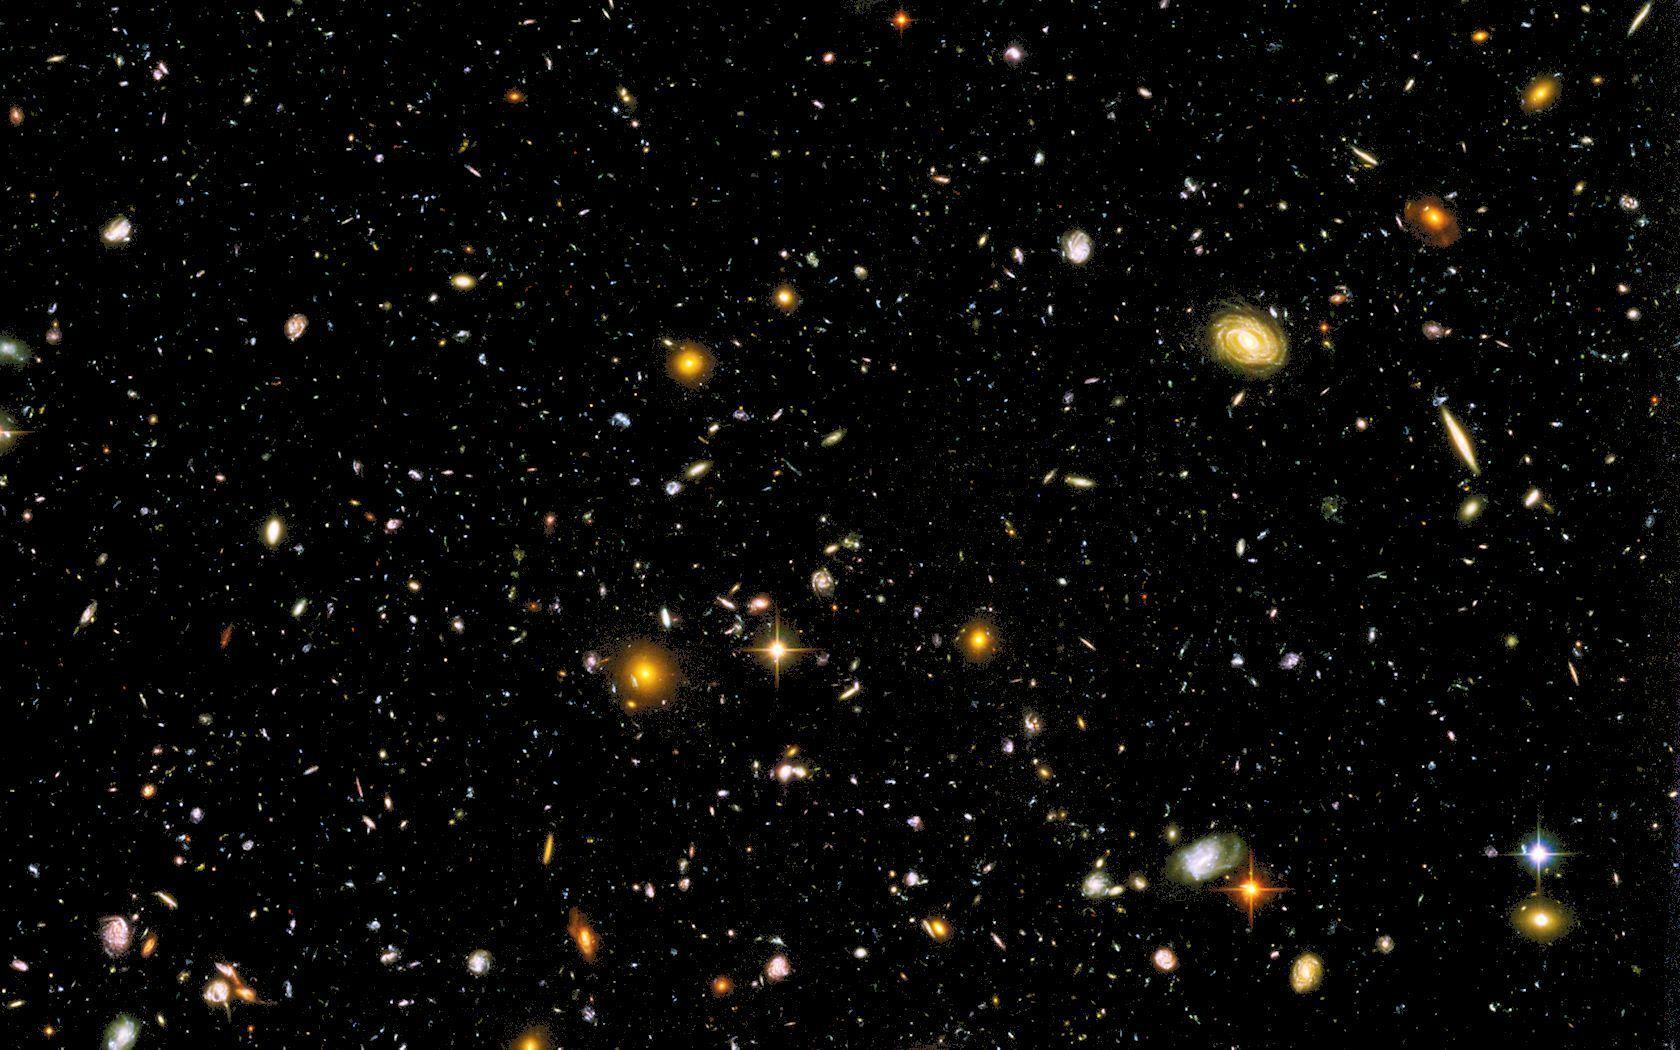 Hubble Ultra Deep Field Image 25 Cool HD. Wallpaperiz